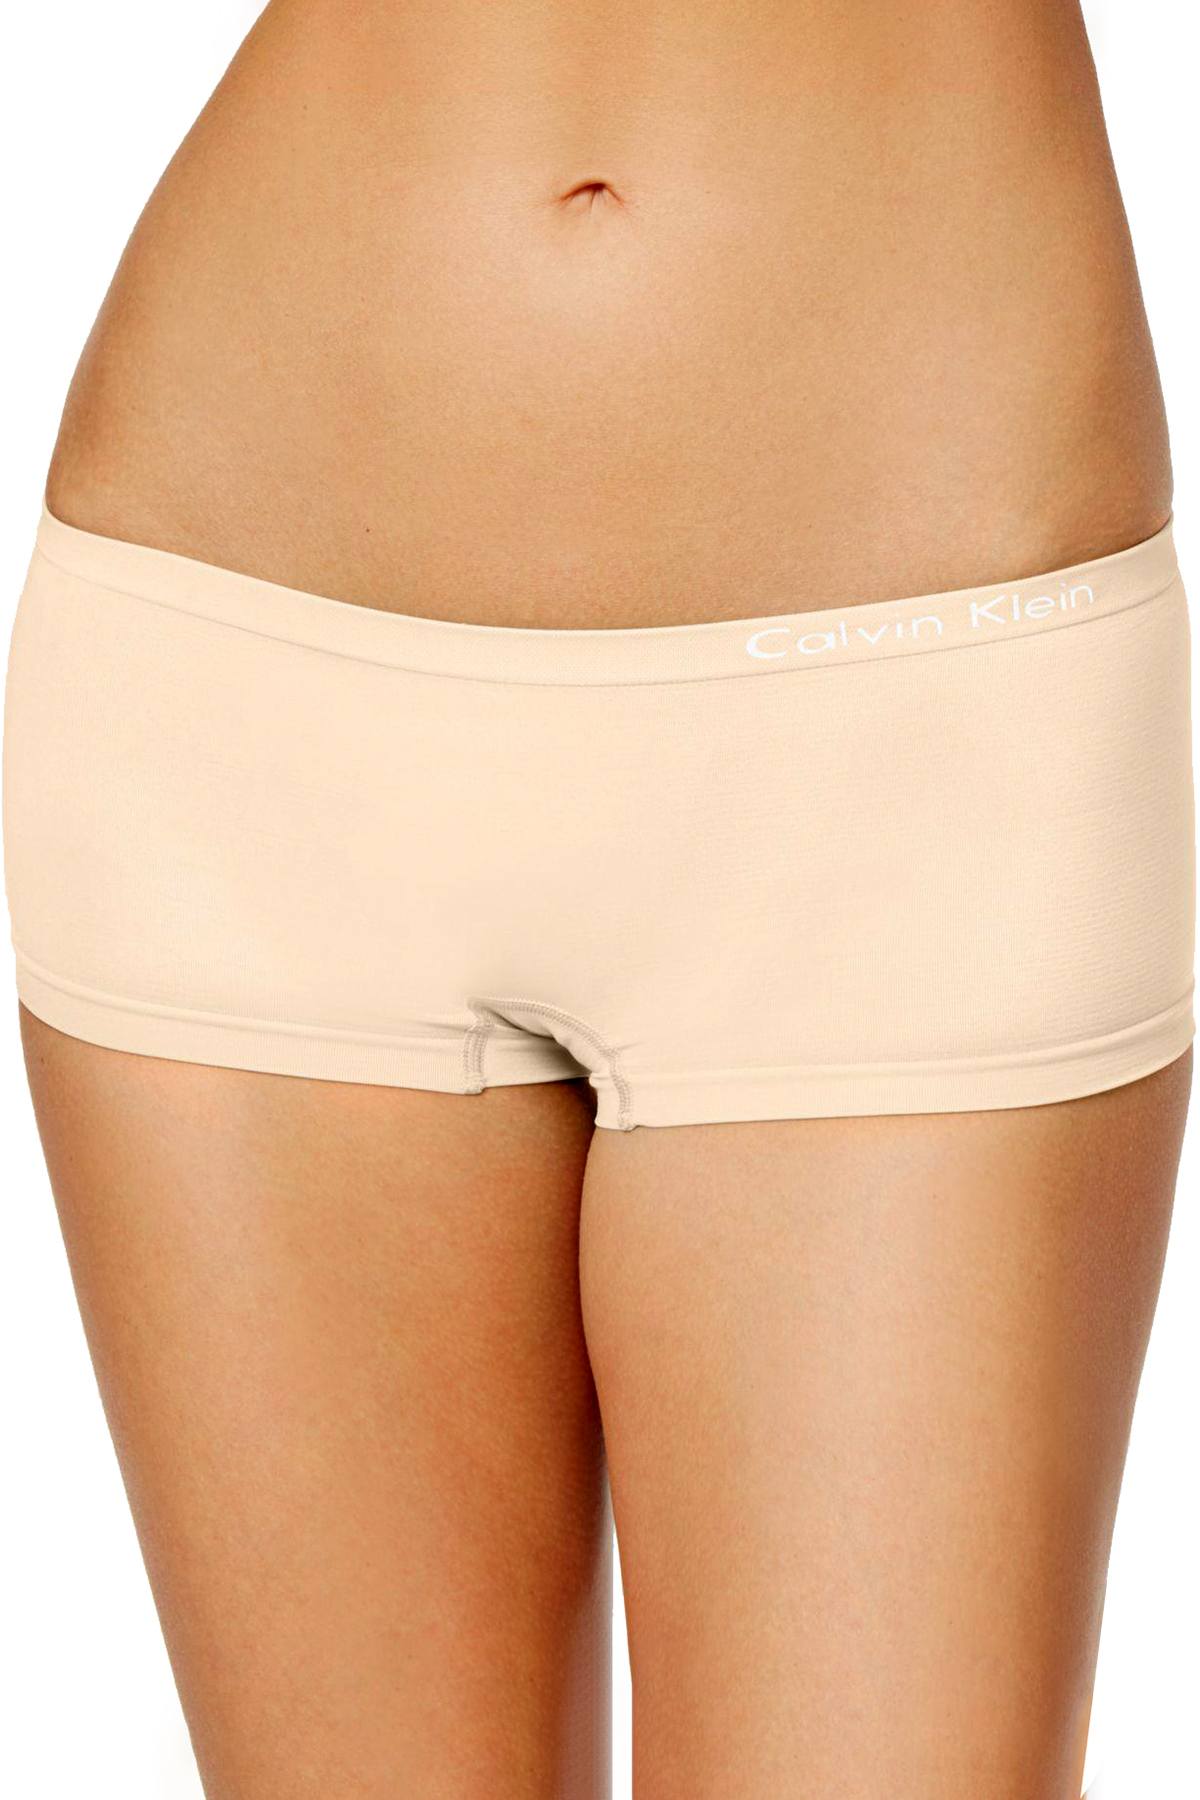 Calvin Klein Underwear Women Hipster Beige Panty - Buy Calvin